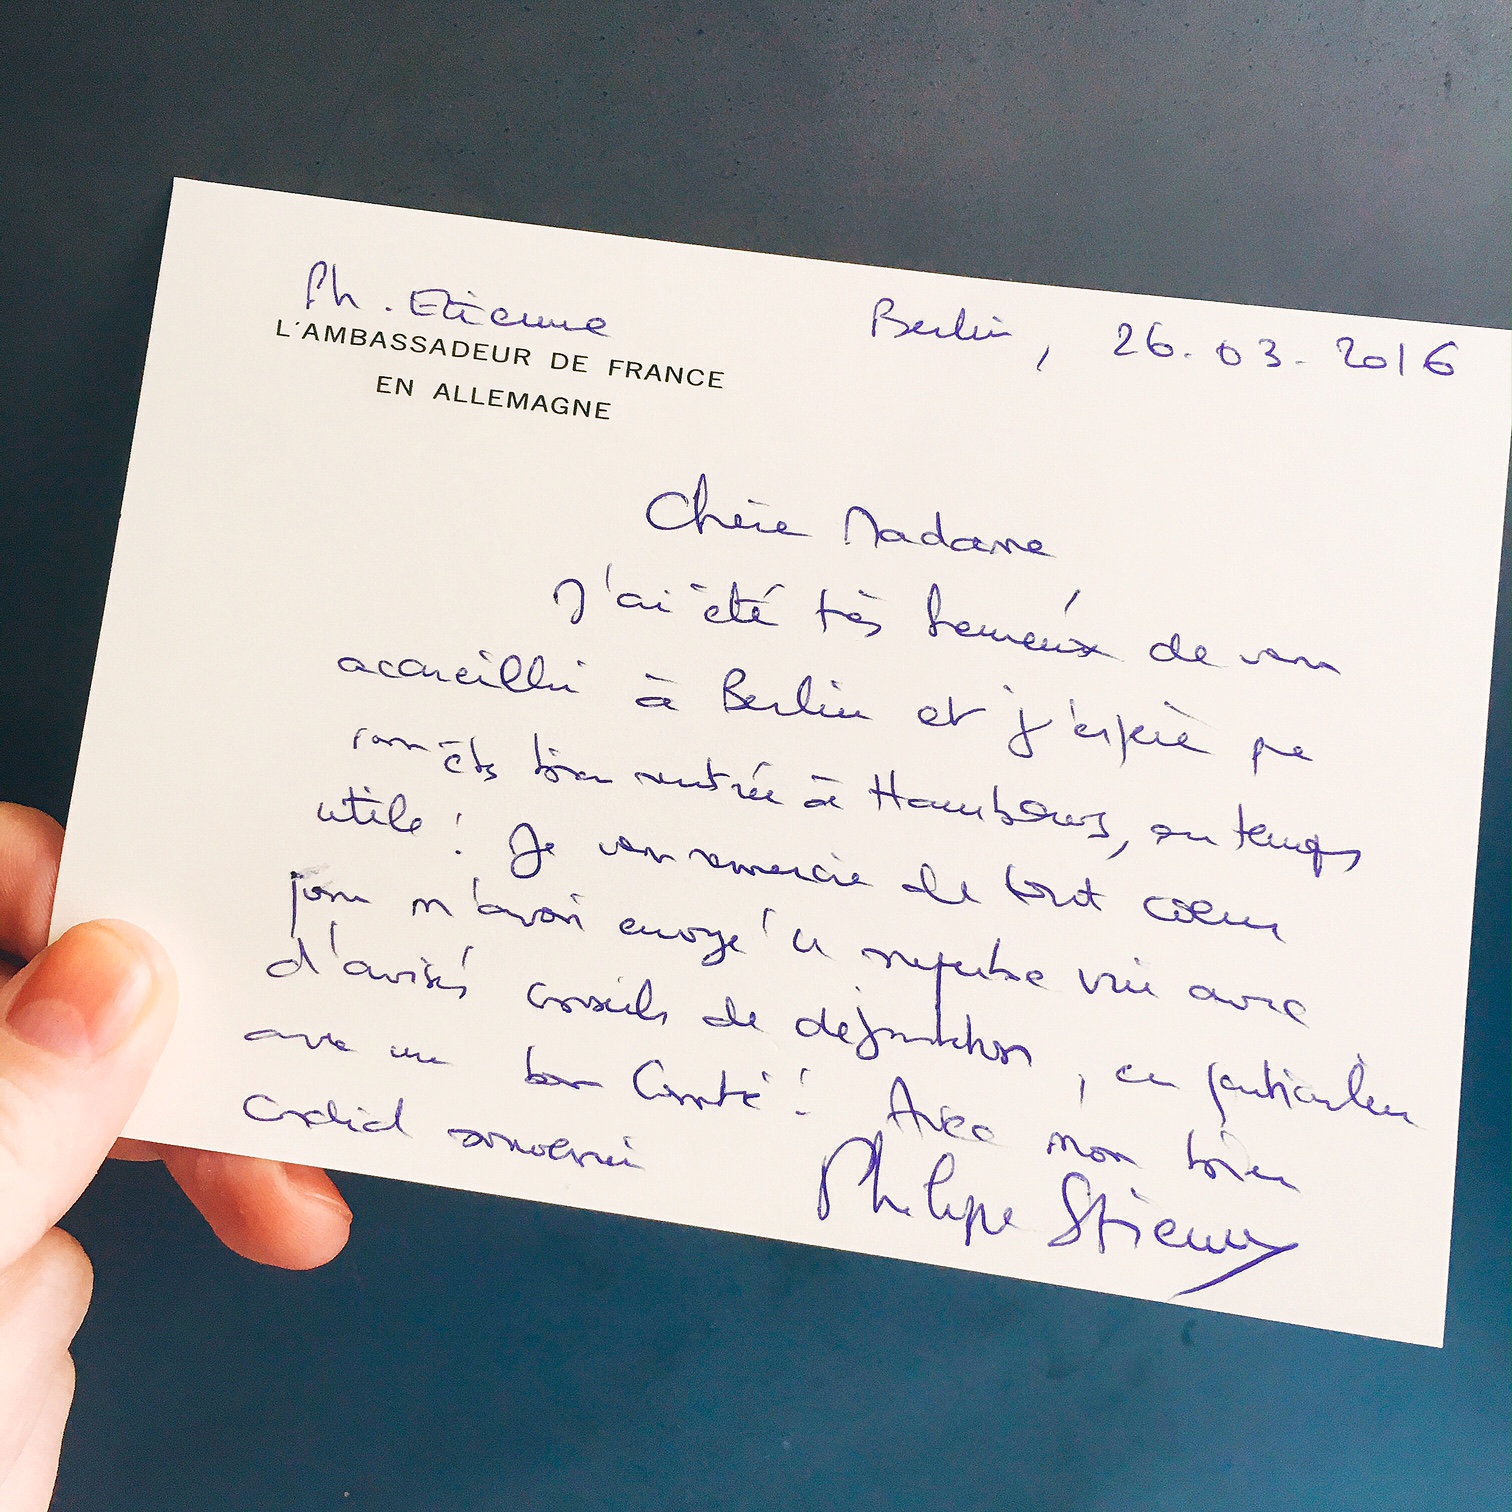 Philippe-Etienne-Berlin-Botschaft-Frankreich